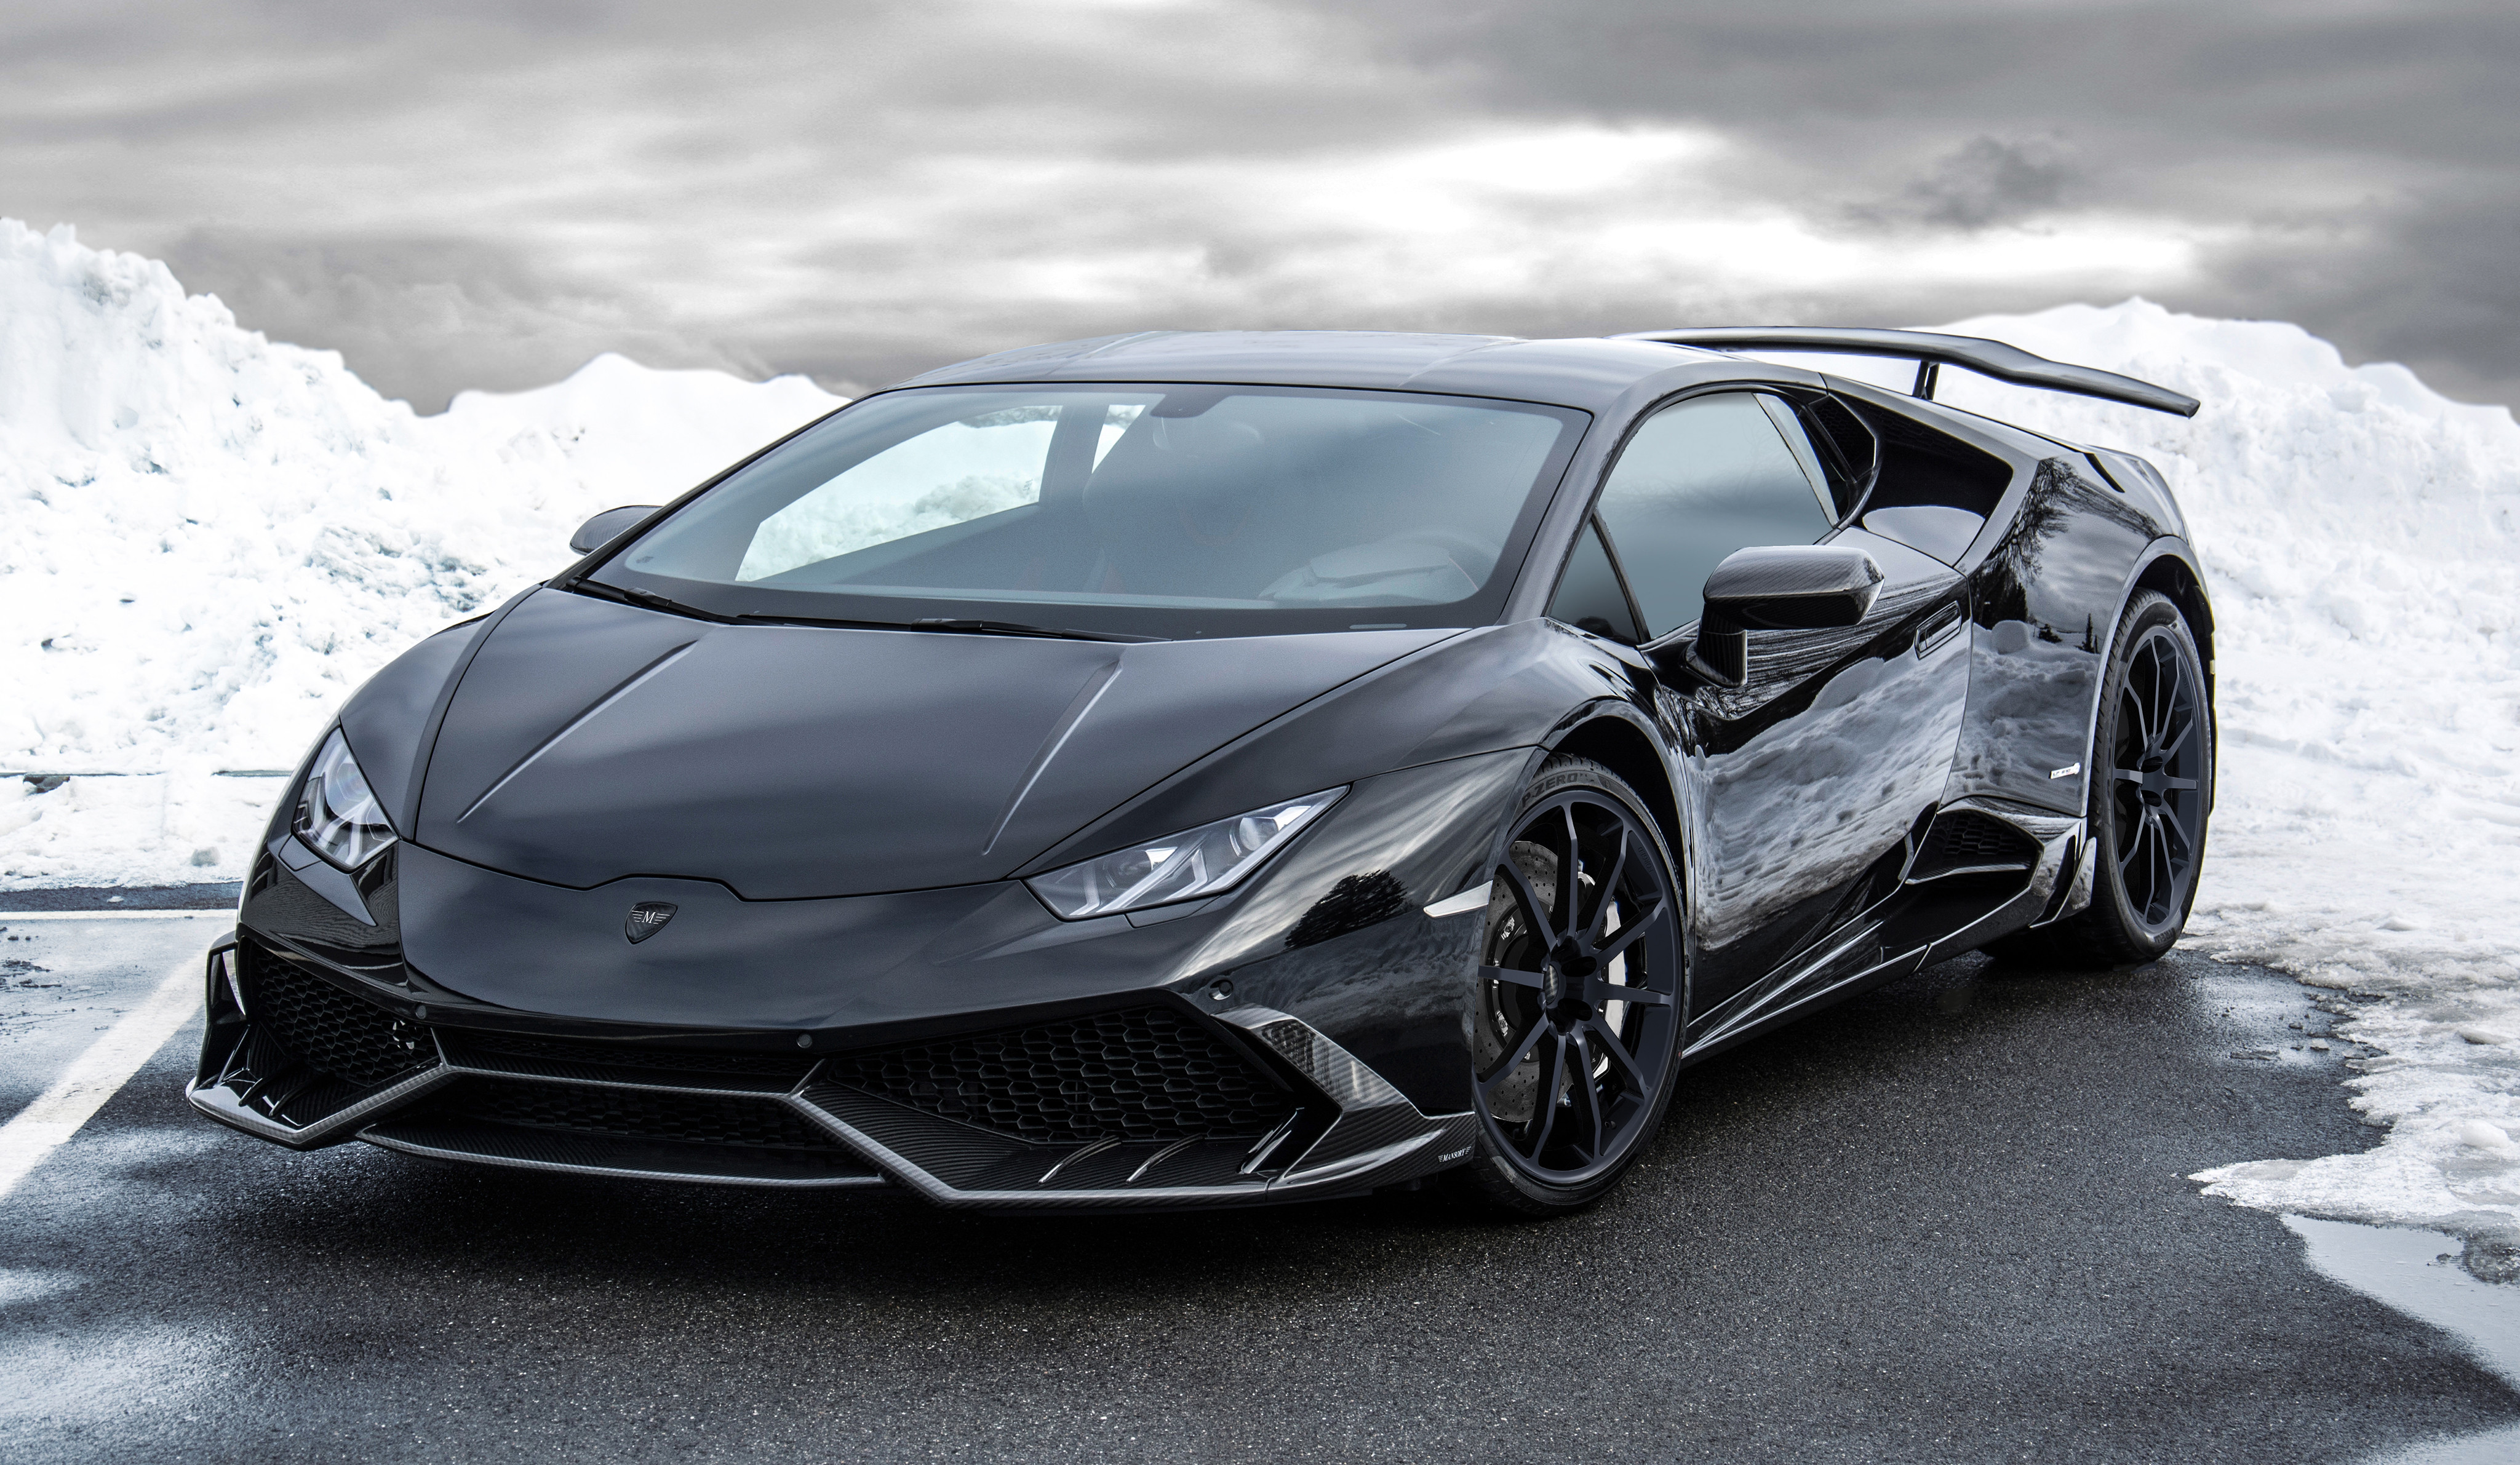 General 4096x2382 car supercars vehicle black cars Lamborghini Lamborghini Huracan Mansory tuning